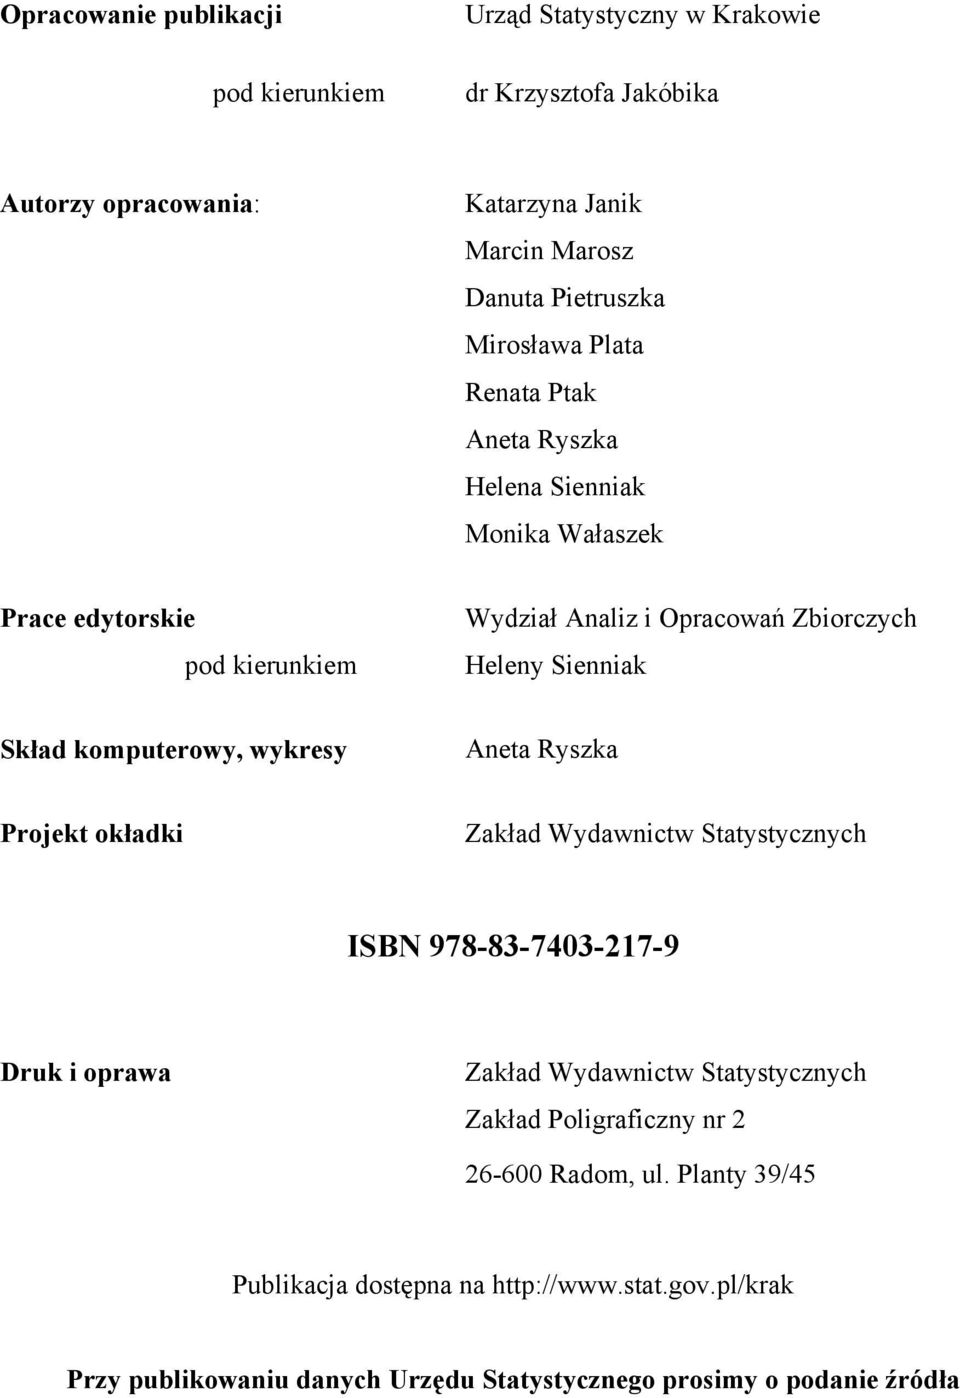 komputerowy, wykresy Aneta Ryszka Projekt okładki Zakład Wydawnictw Statystycznych ISBN 978-83-7403-217-9 Druk i oprawa Zakład Wydawnictw Statystycznych Zakład